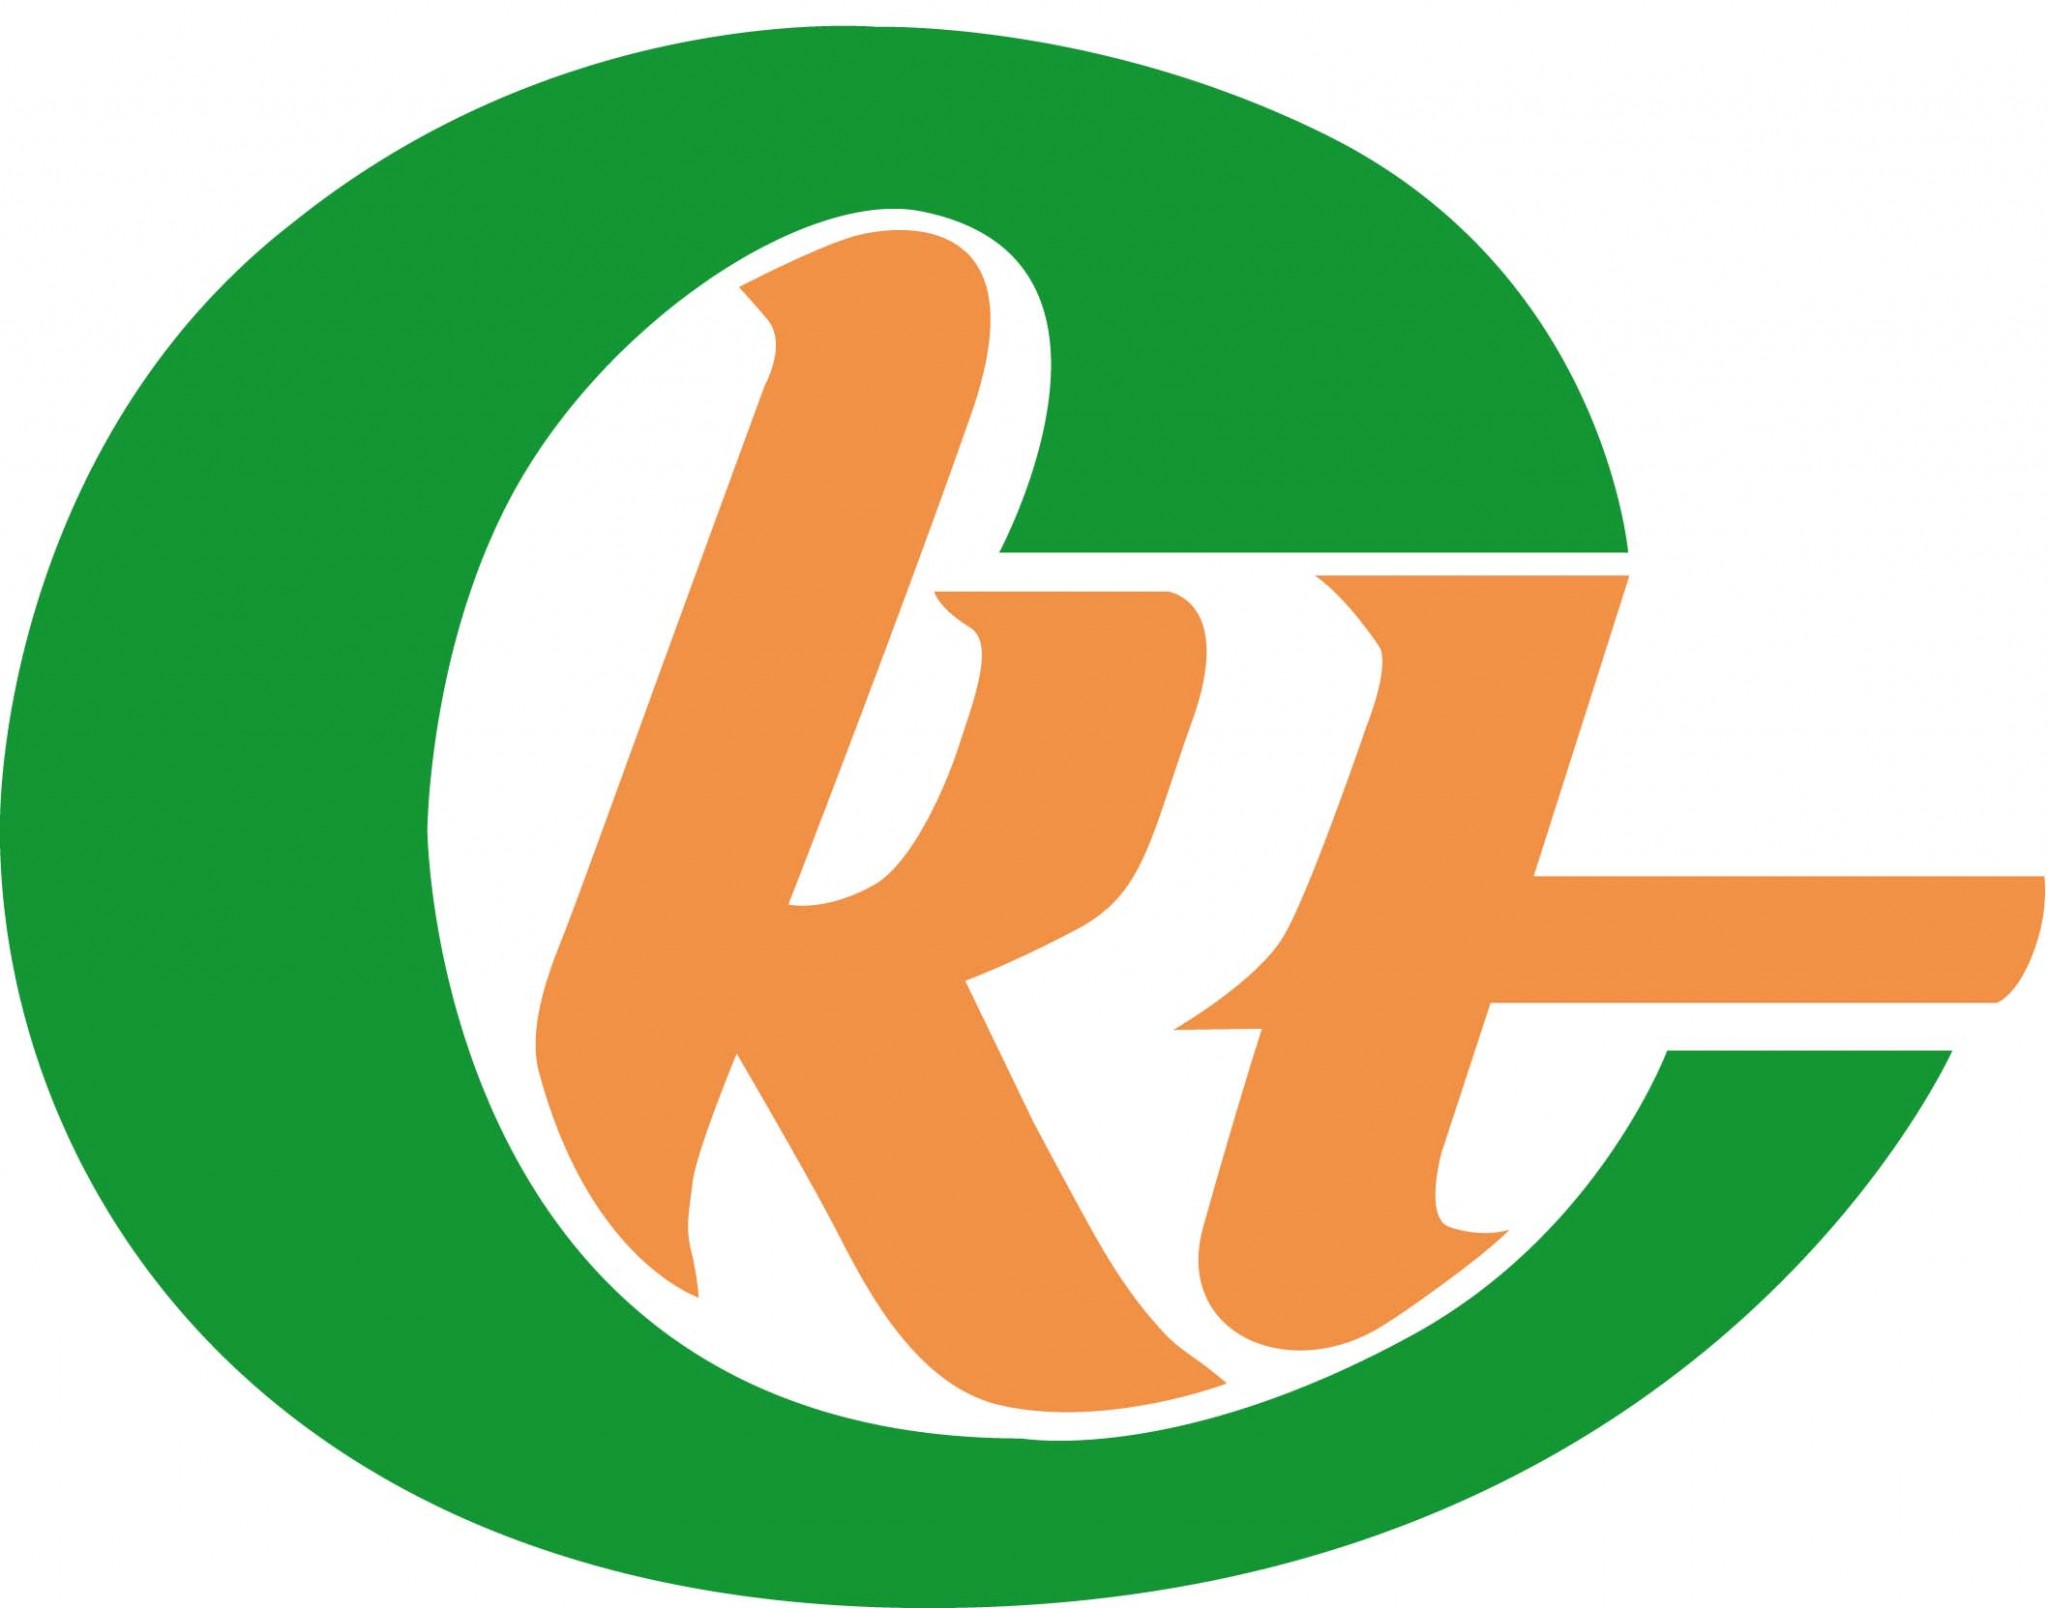 KTC logo